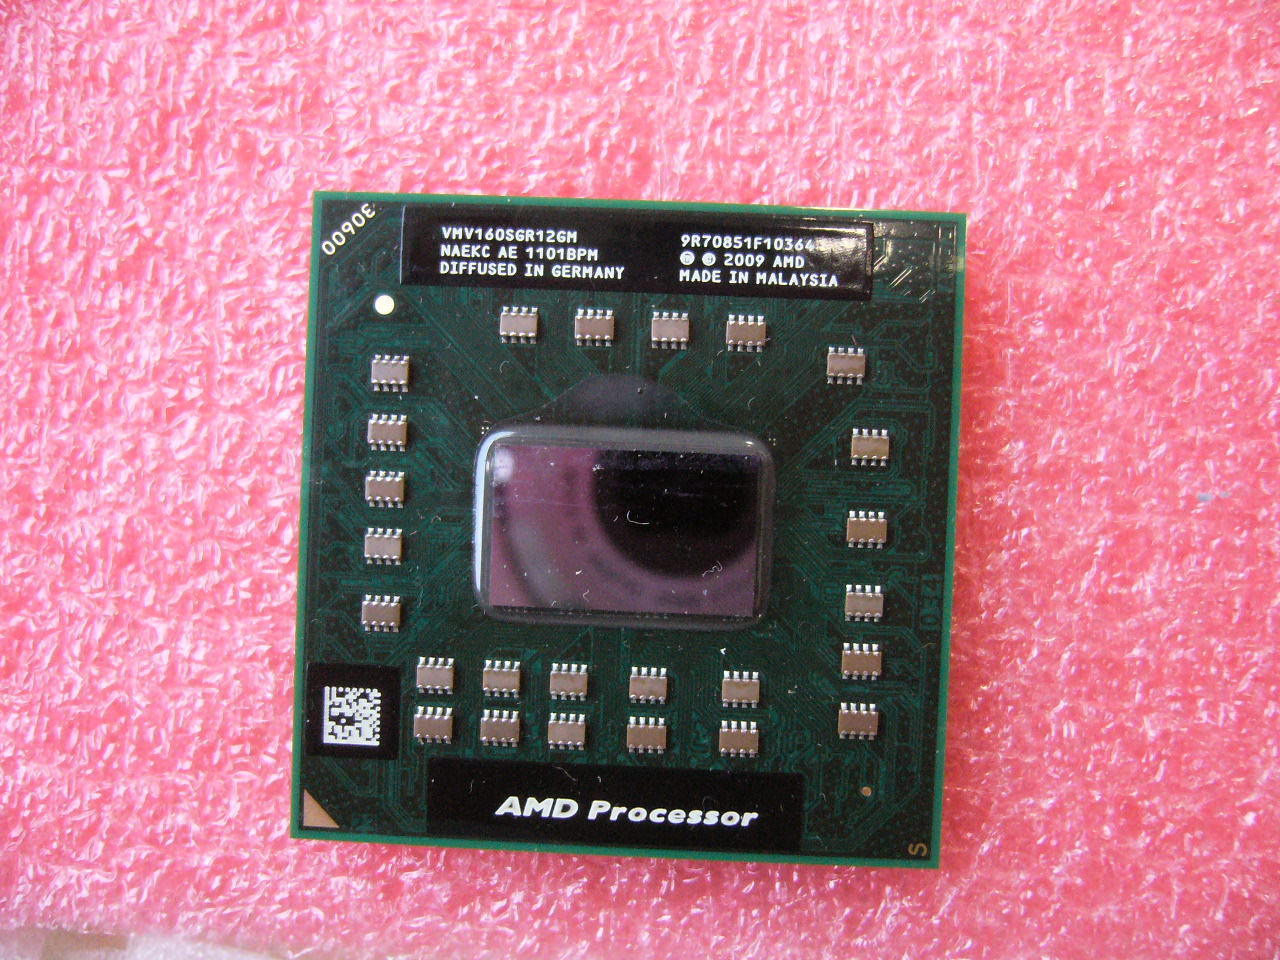 QTY 1x AMD V series V160 2.4GHz Single-Core (VMV160SGR12GM) Laptop CPU Socket S1 - Click Image to Close